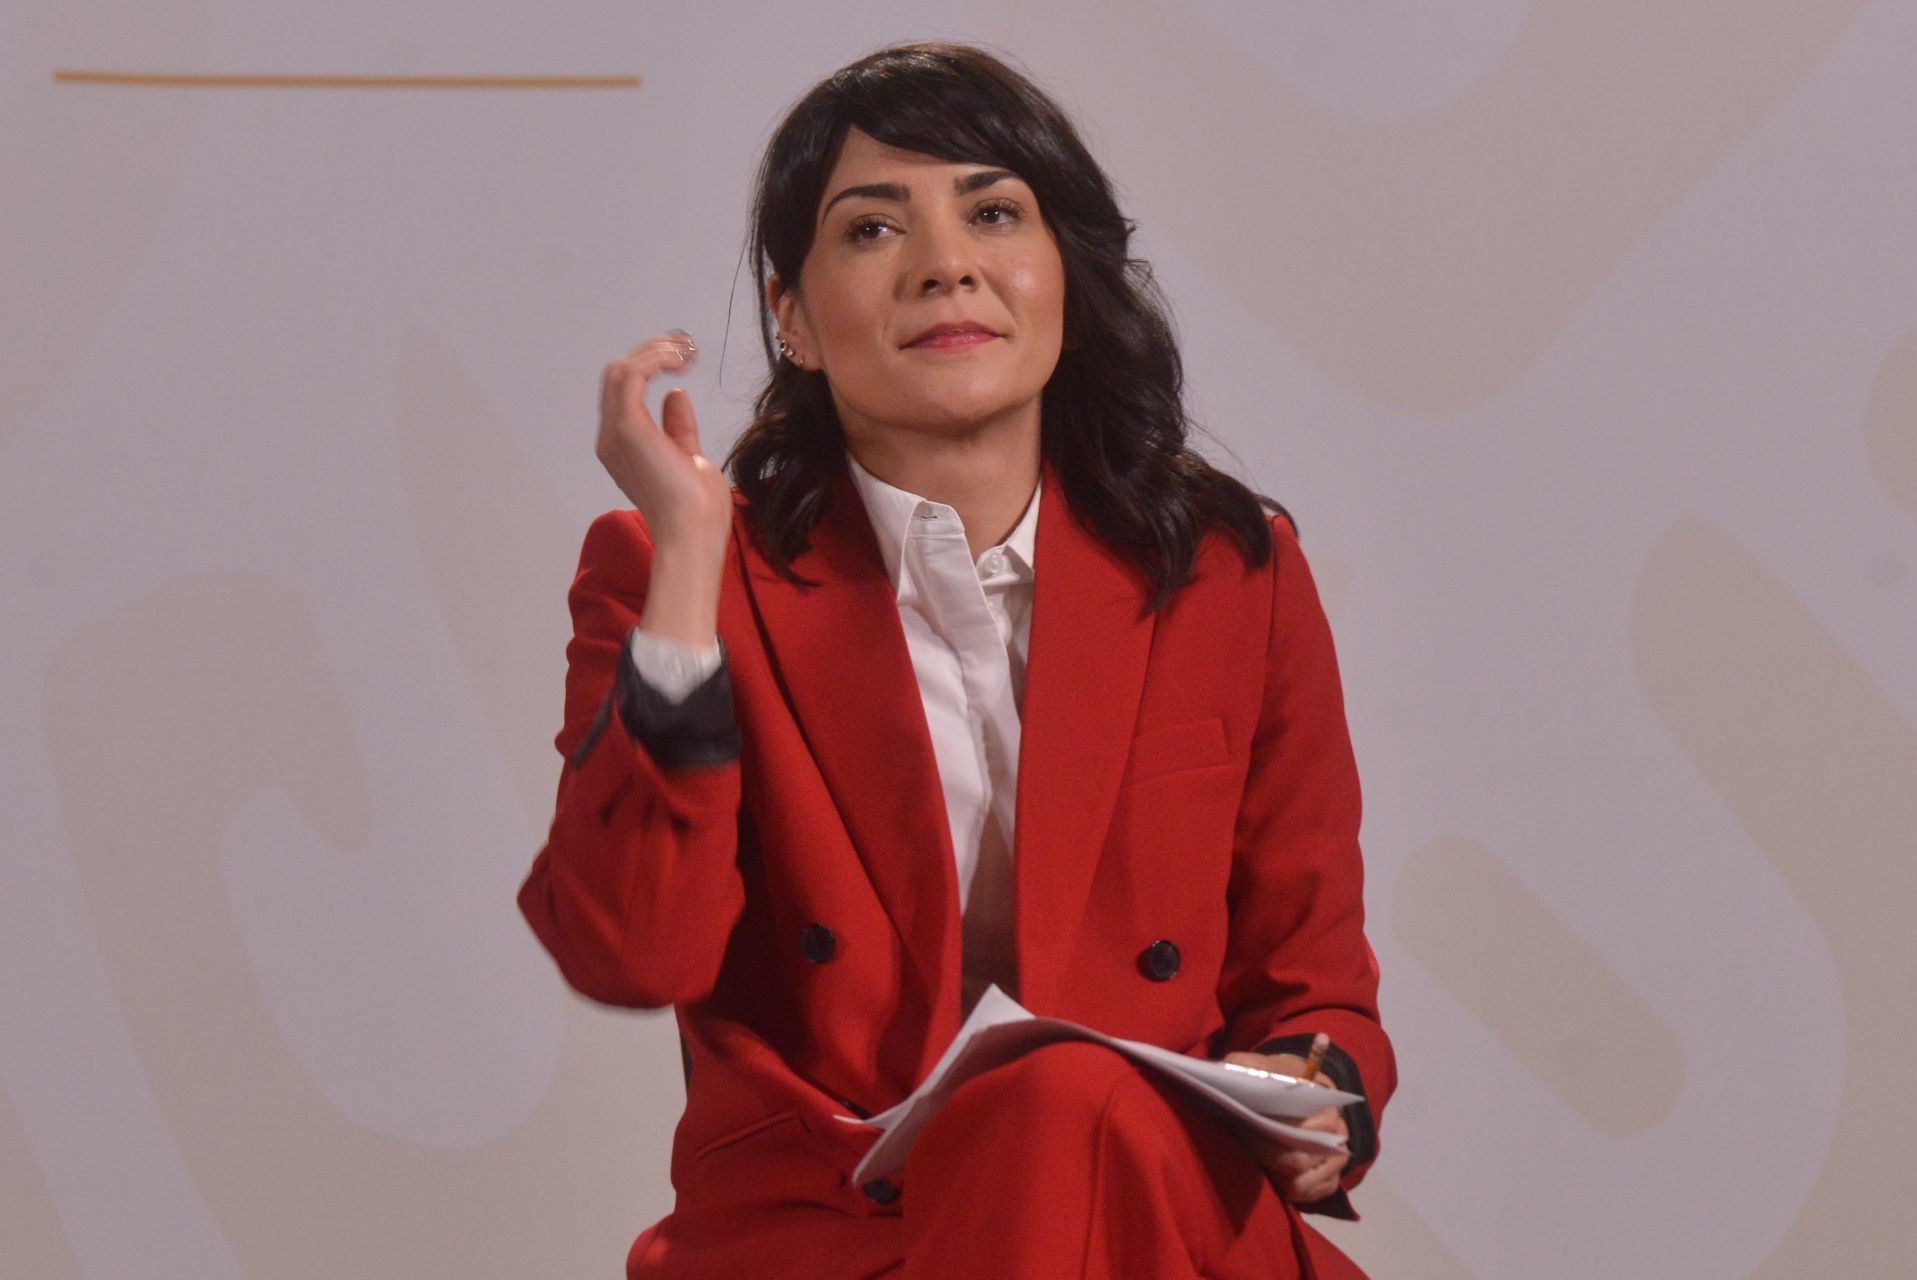 Ana Elizabeth García Vilchis es la encargada de presentar la sección "Quién es quién en las mentiras".
 
FOTO: MARIO JASSO/CUARTOSCURO.COM